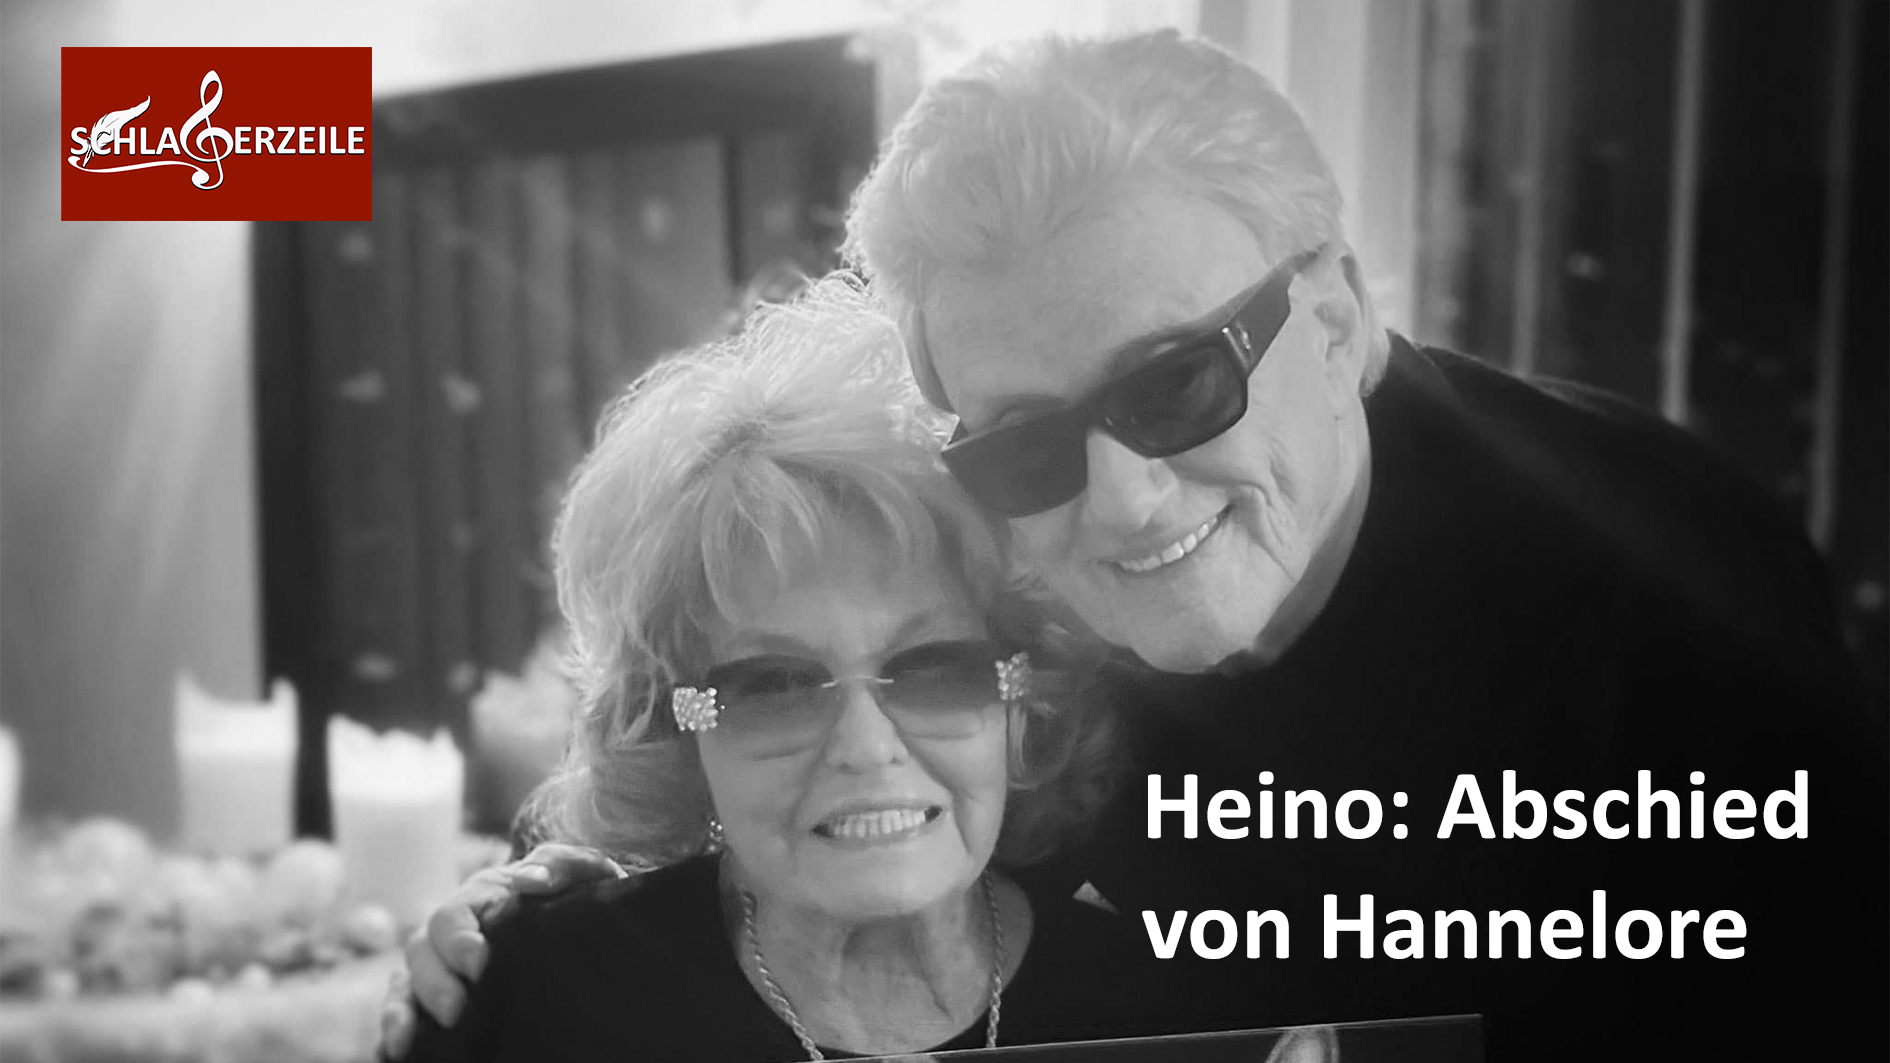 Heino Hannelore Abschied